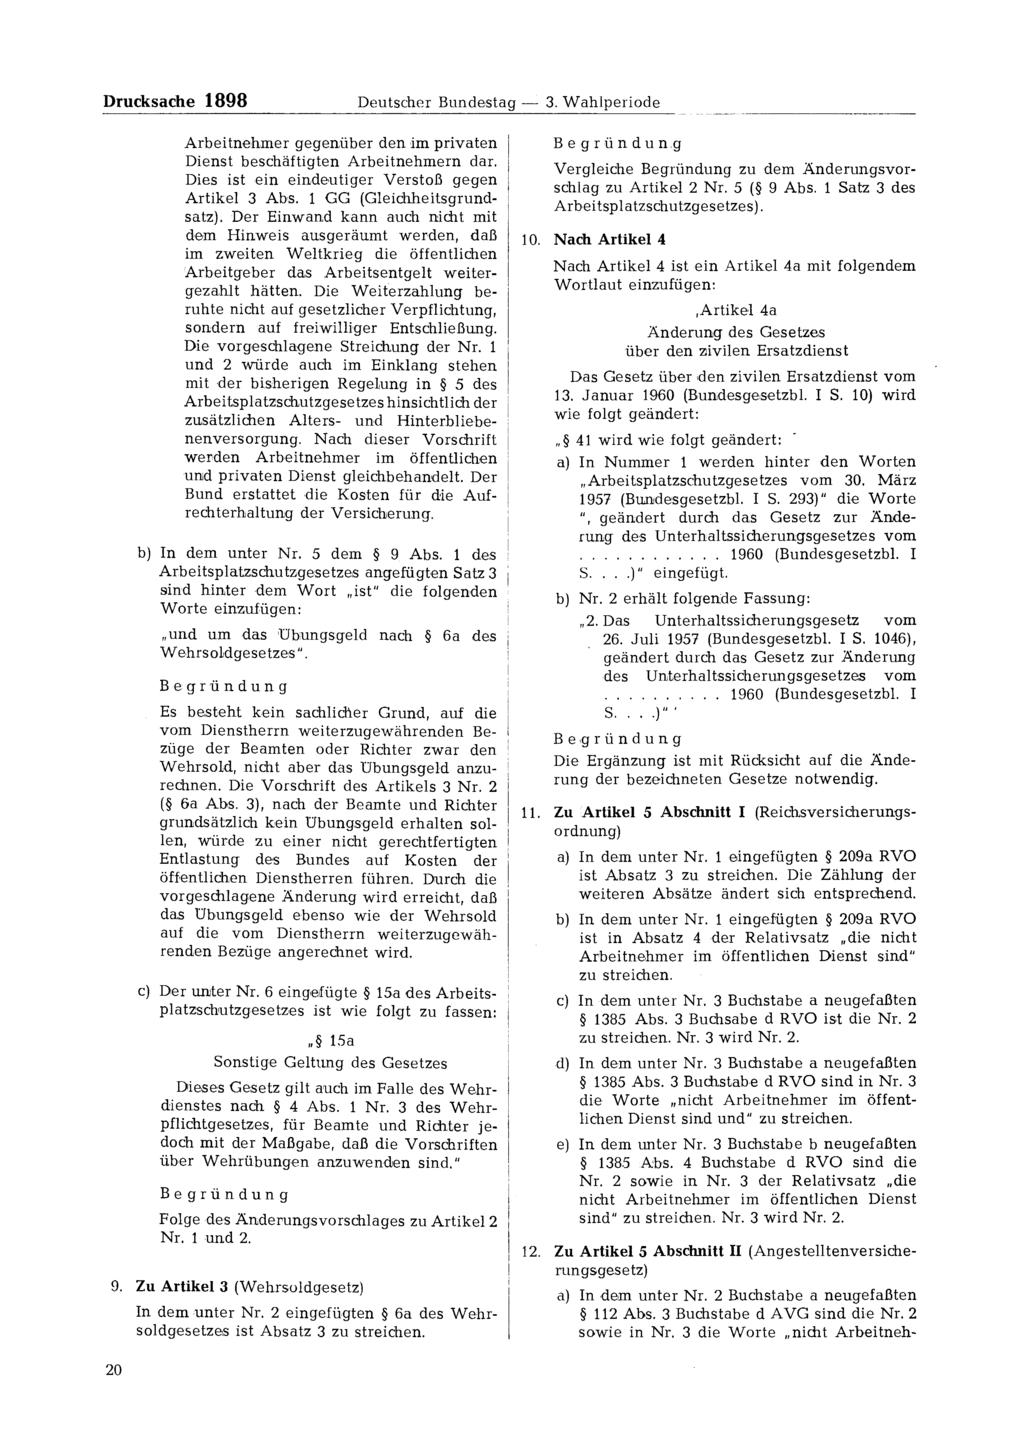 Drucksache 1898 Deutscher Bundestag - 3. Wahlperiode Arbeitnehmer gegenüber den im privaten Dienst beschäftigten Arbeitnehmern dar. Dies ist ein eindeutiger Verstoß gegen Artikel 3 Abs.